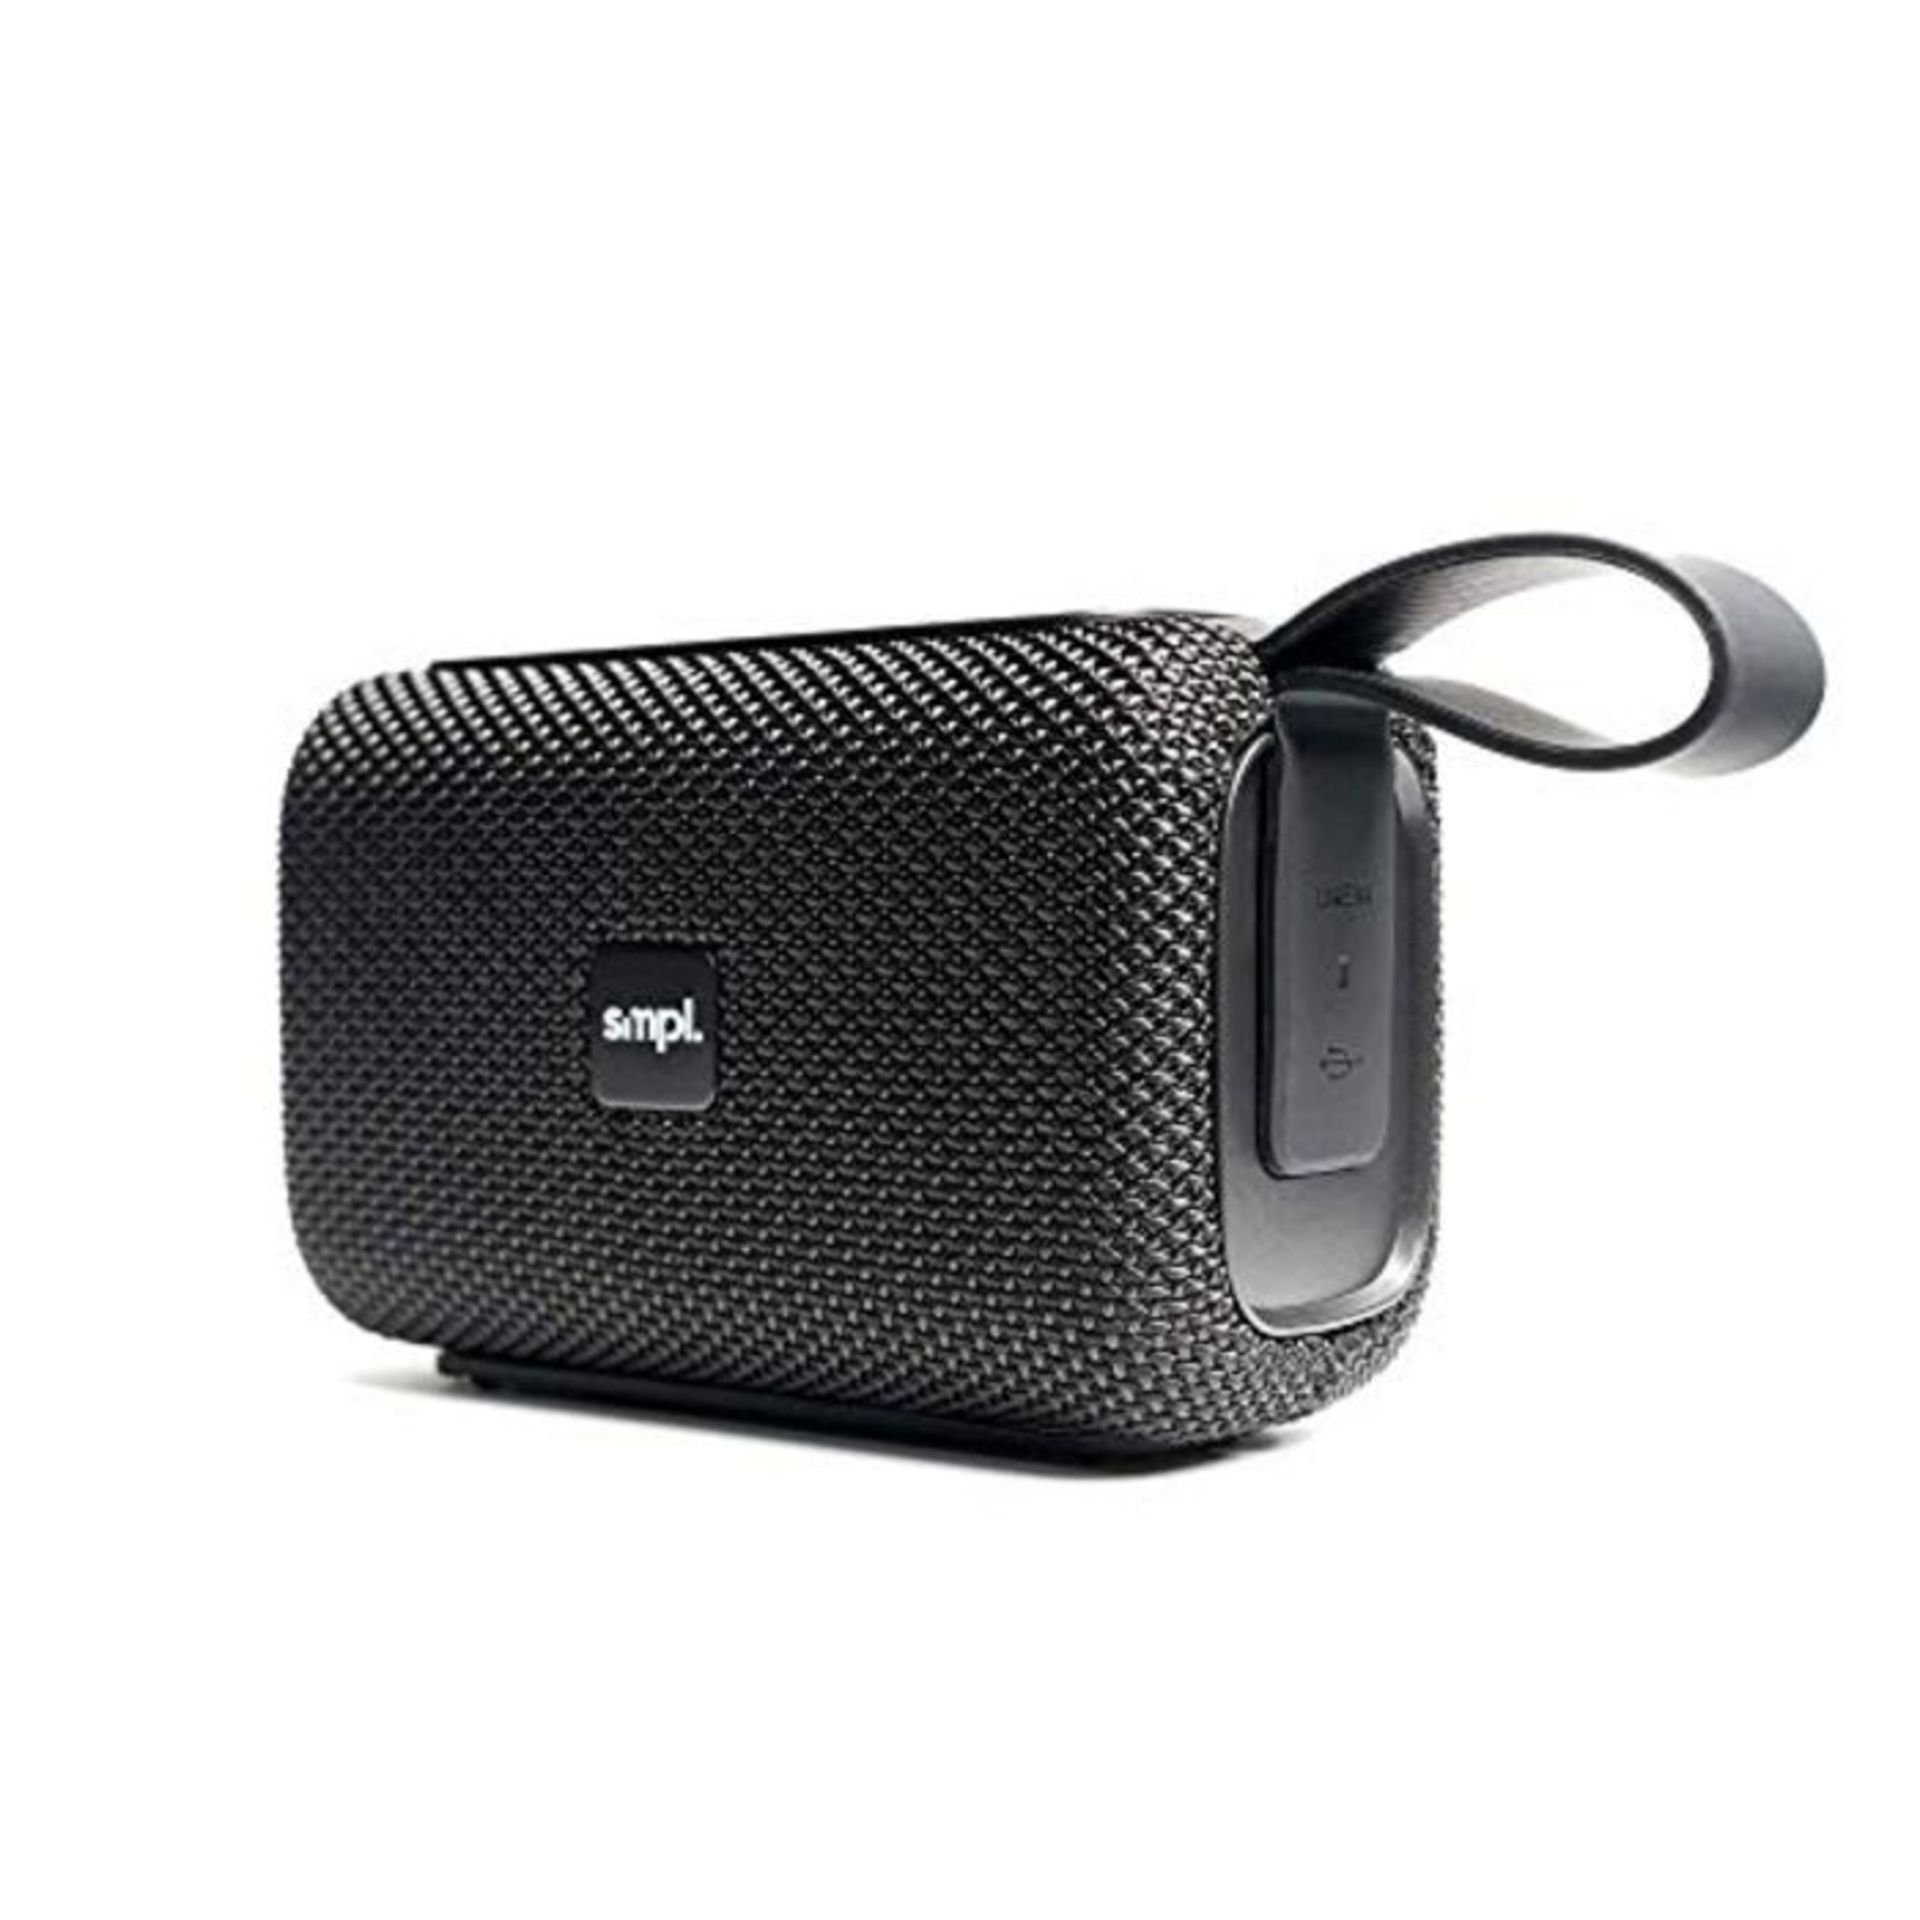 Smpl Wireless-Lautsprecher - Kabellose Bluetooth Speaker, 8W, wasserdicht nach Schutzk